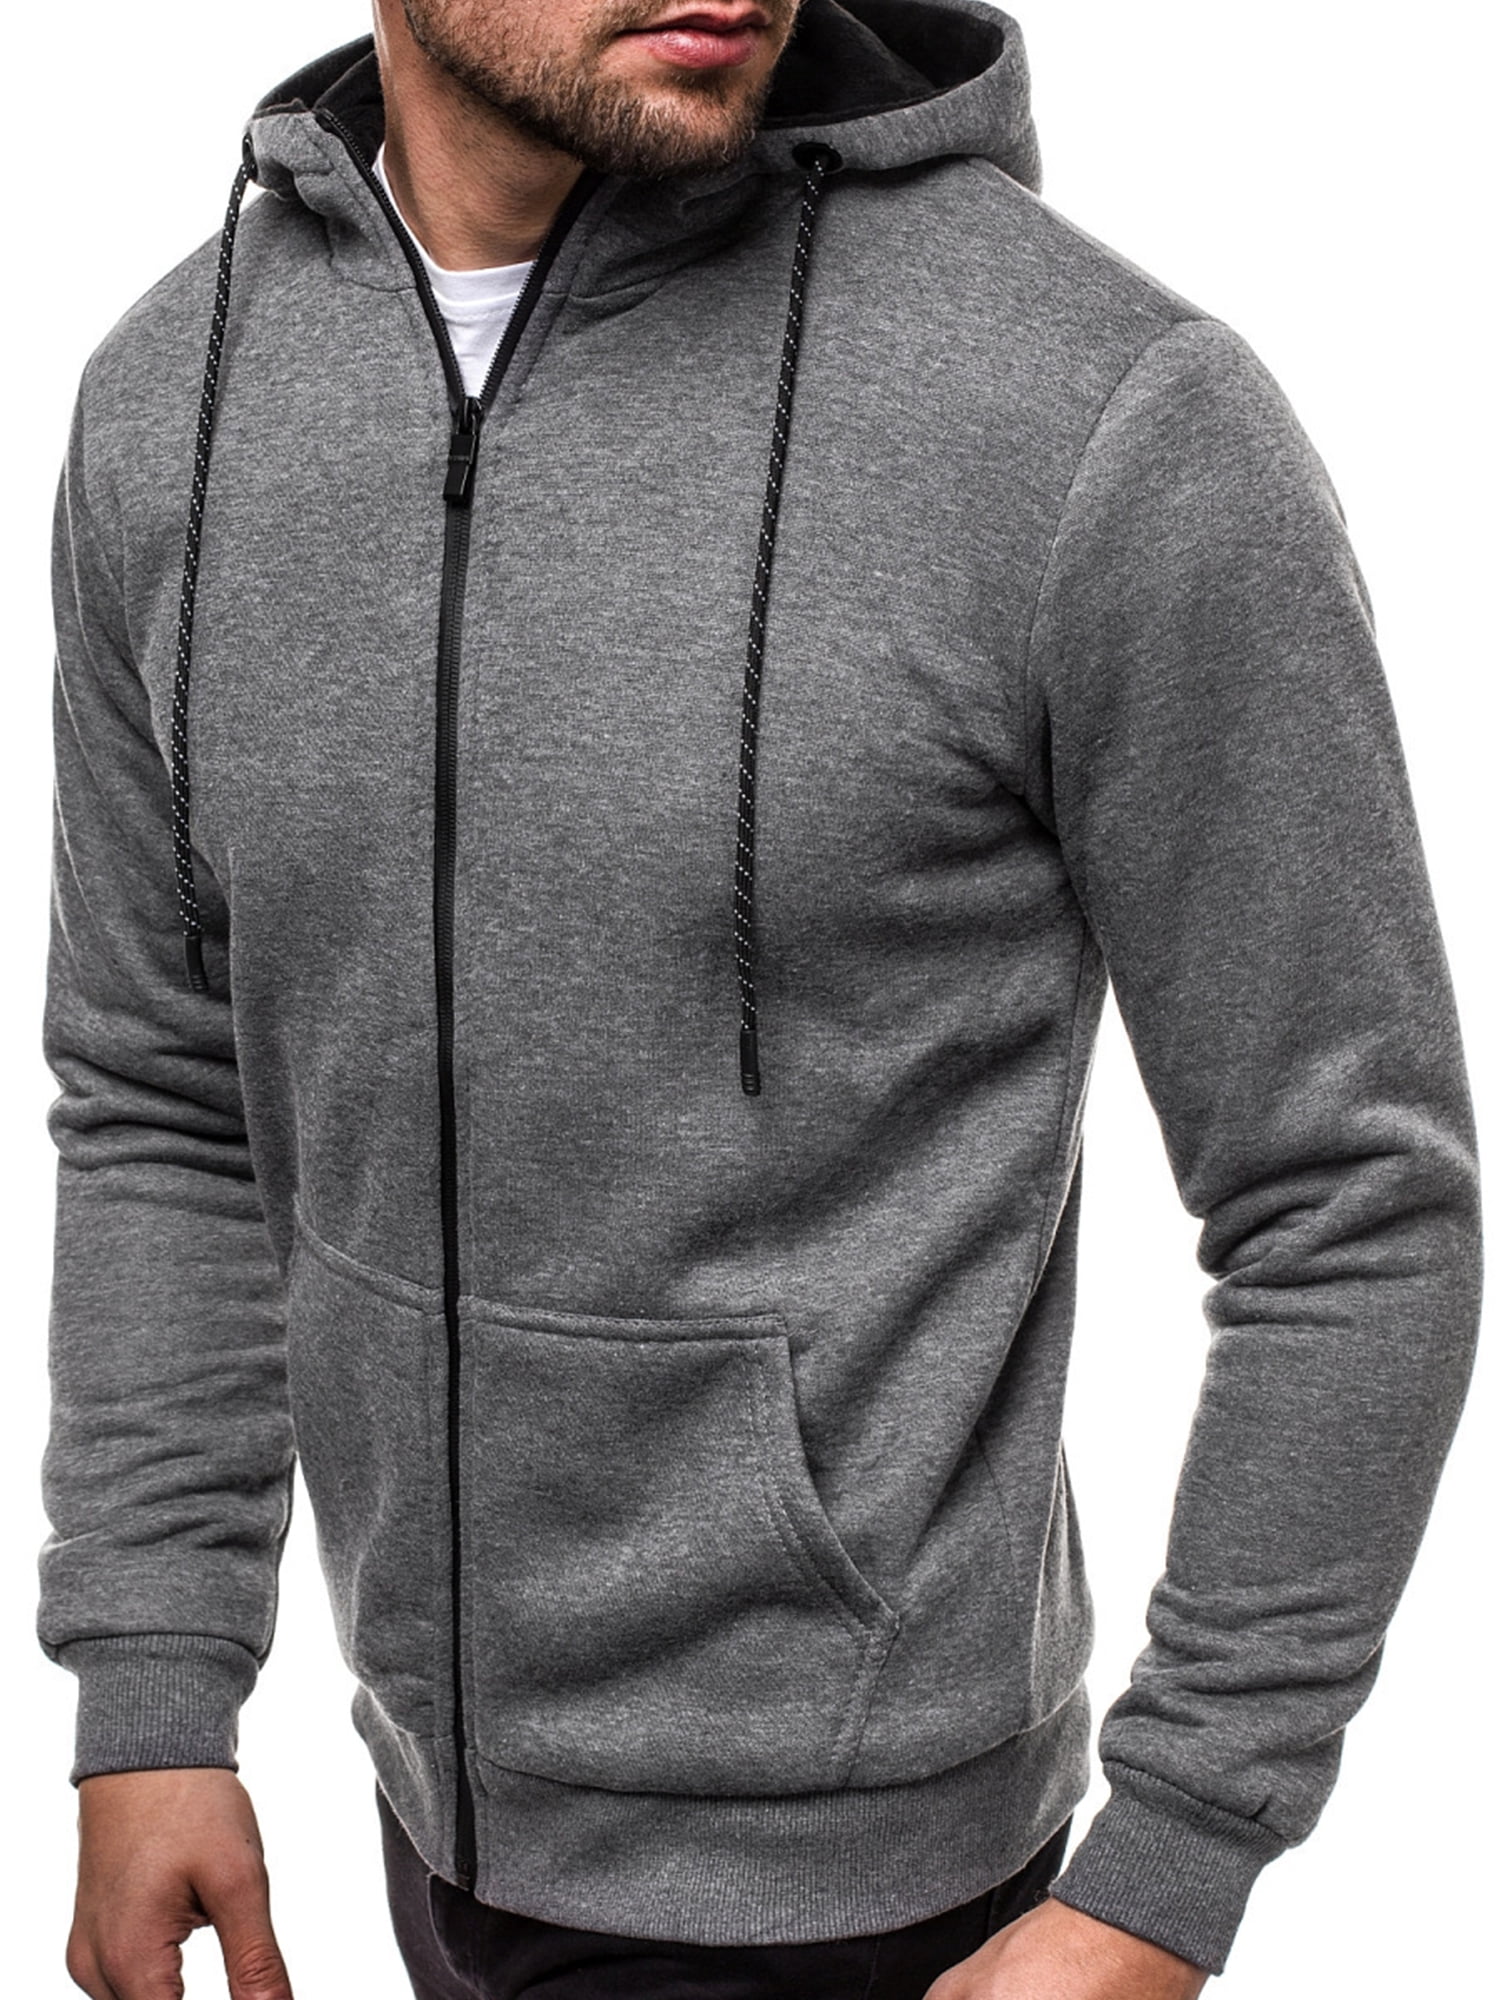 Tops Hoodie Fleeces Men's Jacket Hoody Sweater Winter Warm Sweatshirts Pullover